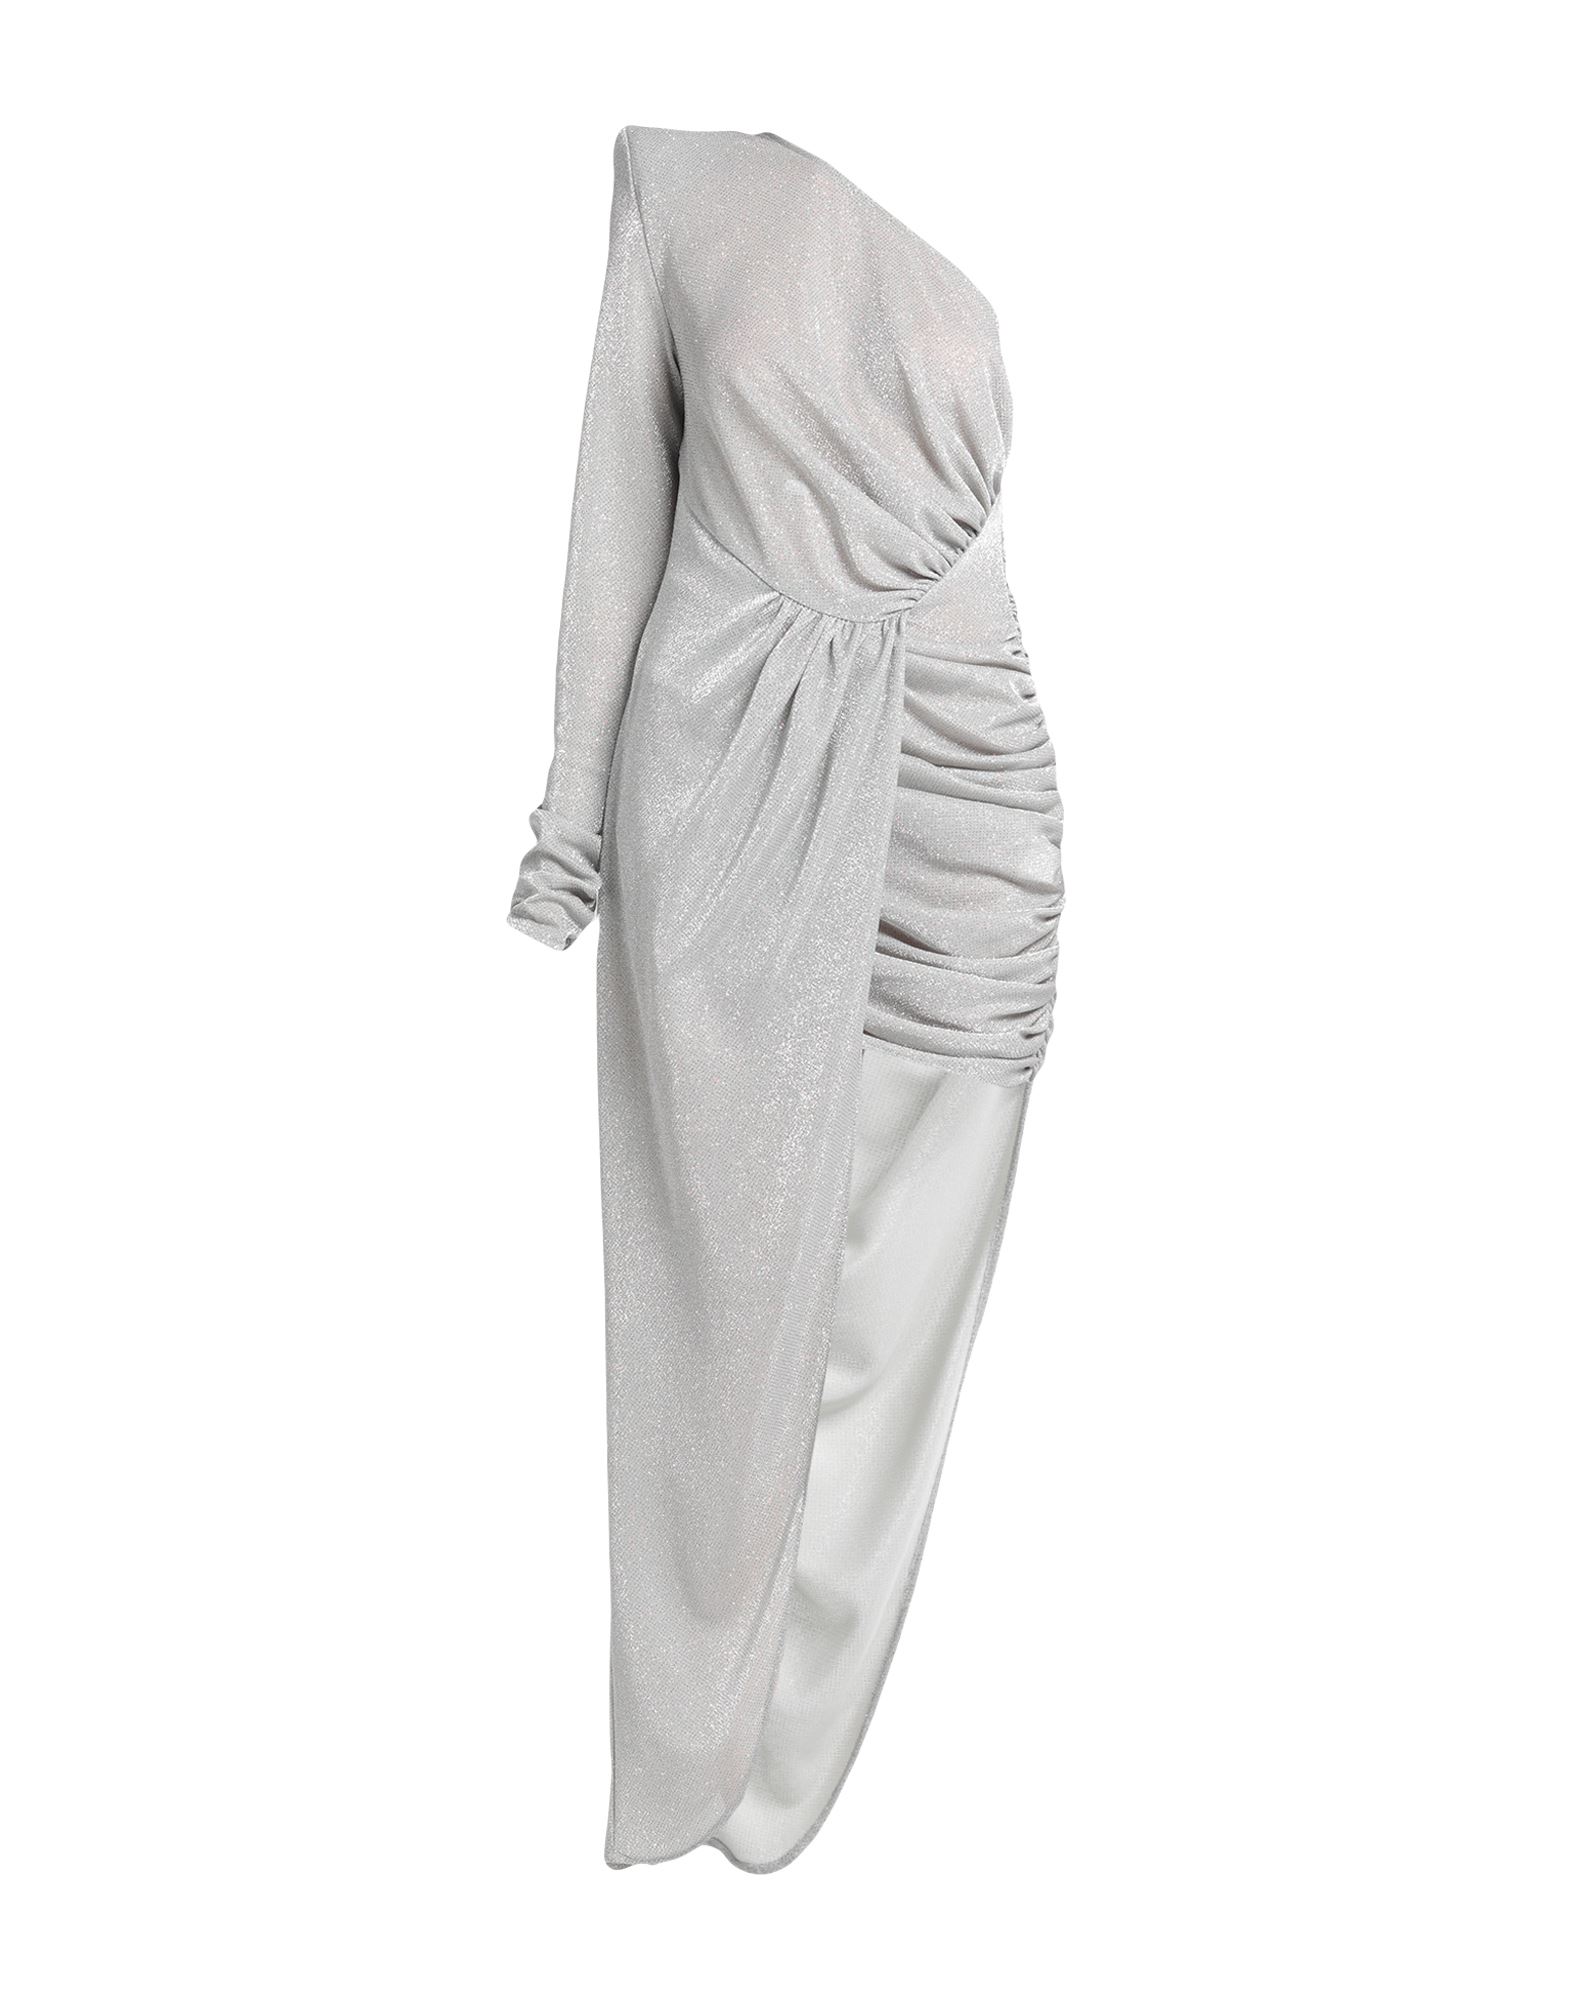 Actualee Short Dresses In Grey